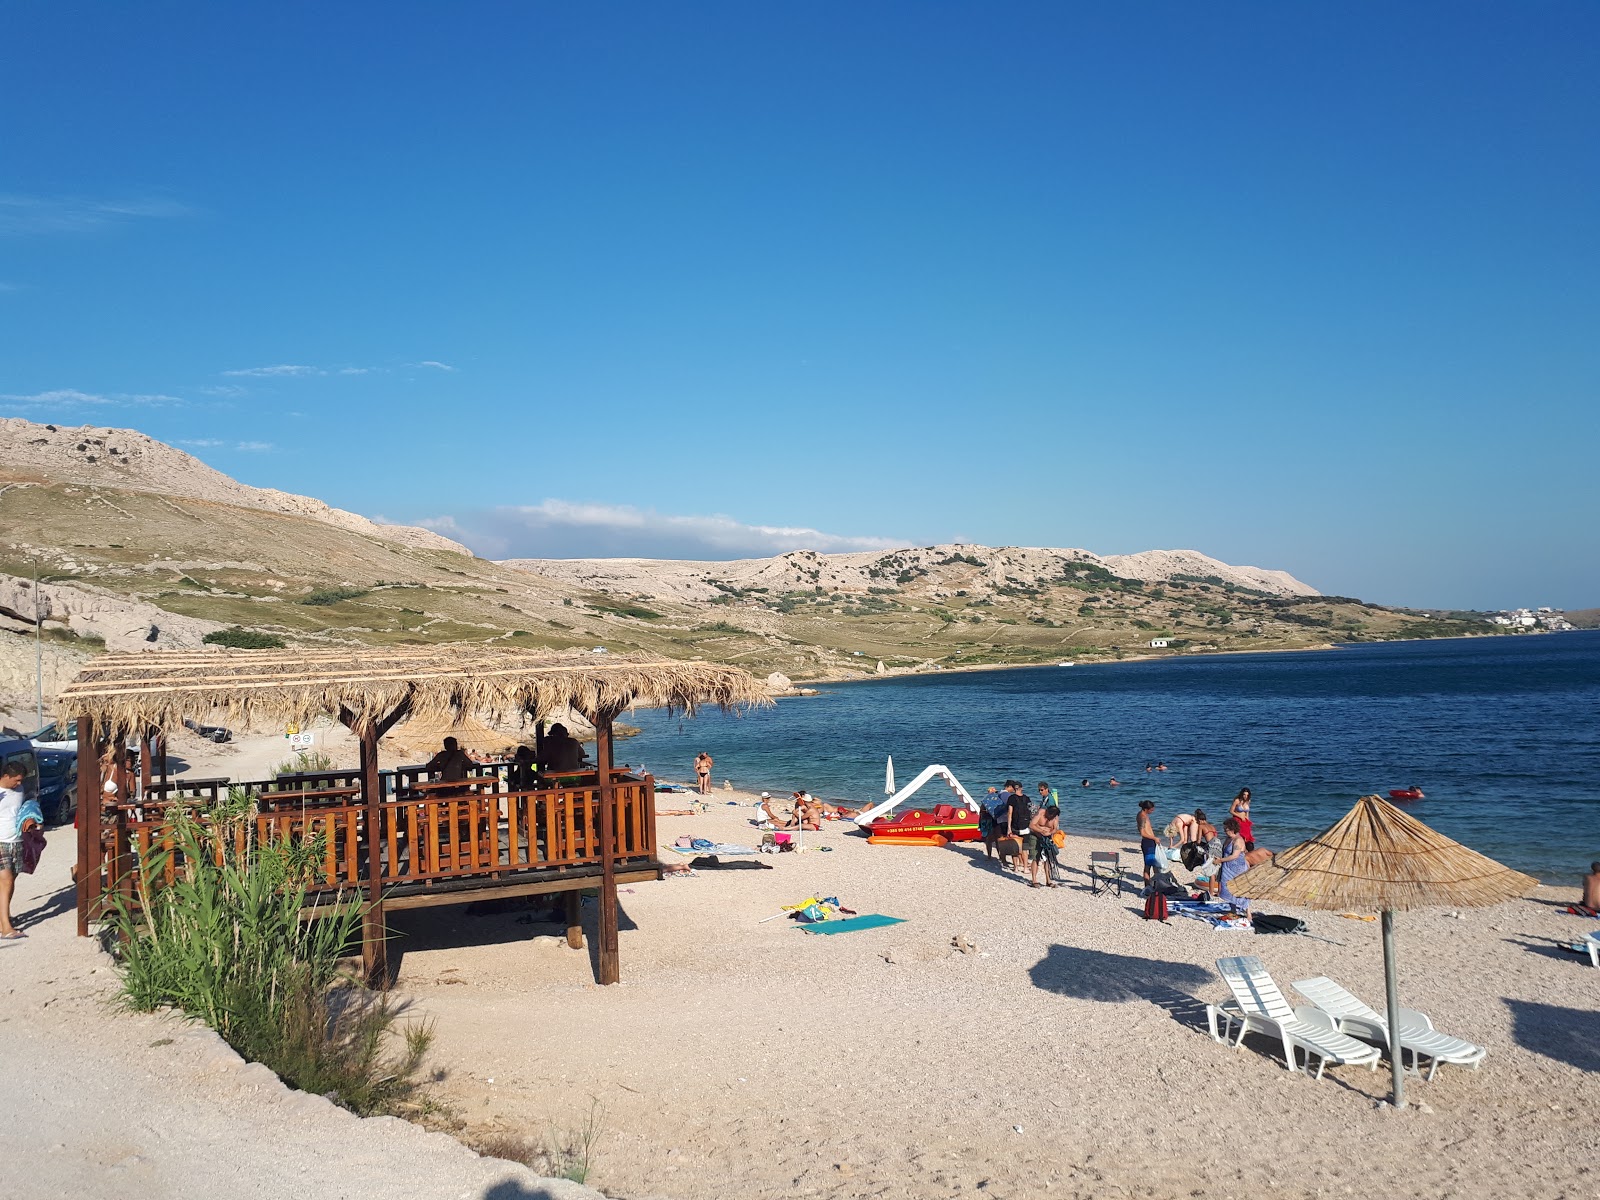 Foto av Zubovici beach med turkos rent vatten yta